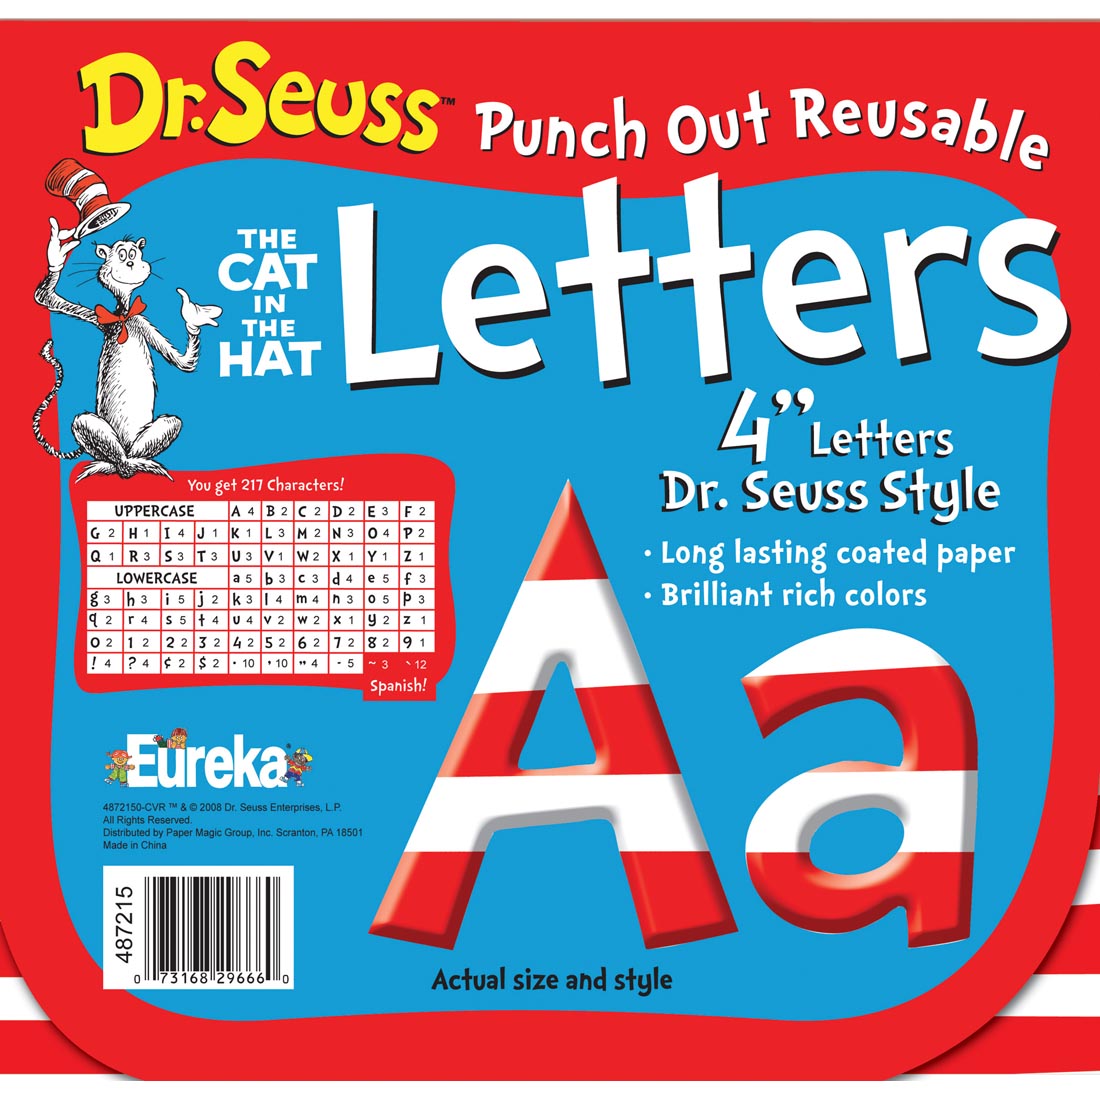 Dr. Seuss Stripes Punch Out Reusable Letters by Eureka